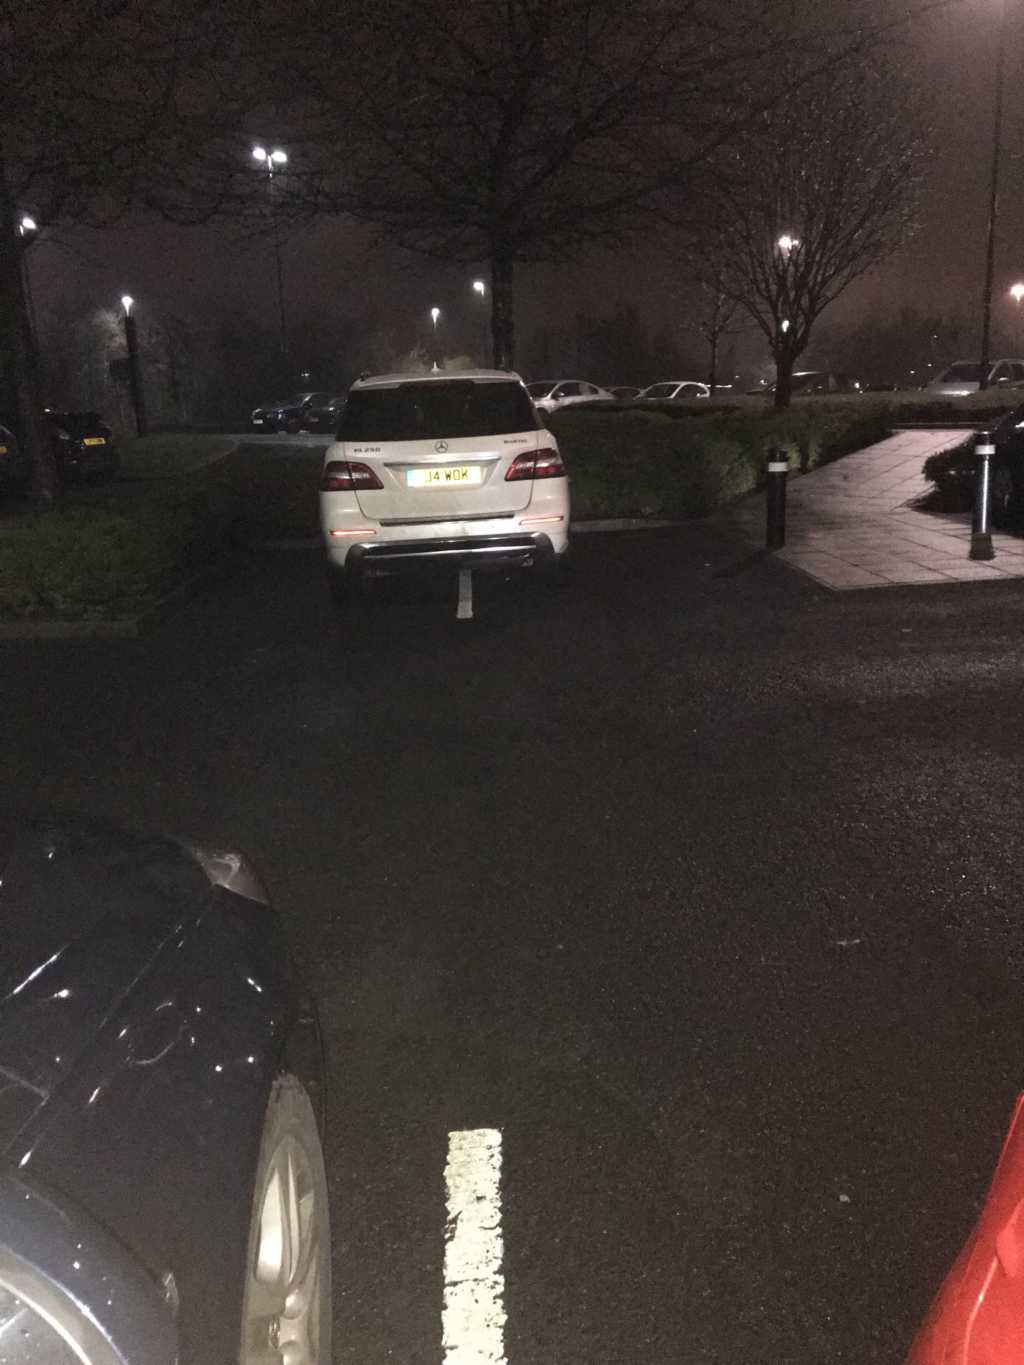 J4 WOK displaying crap parking